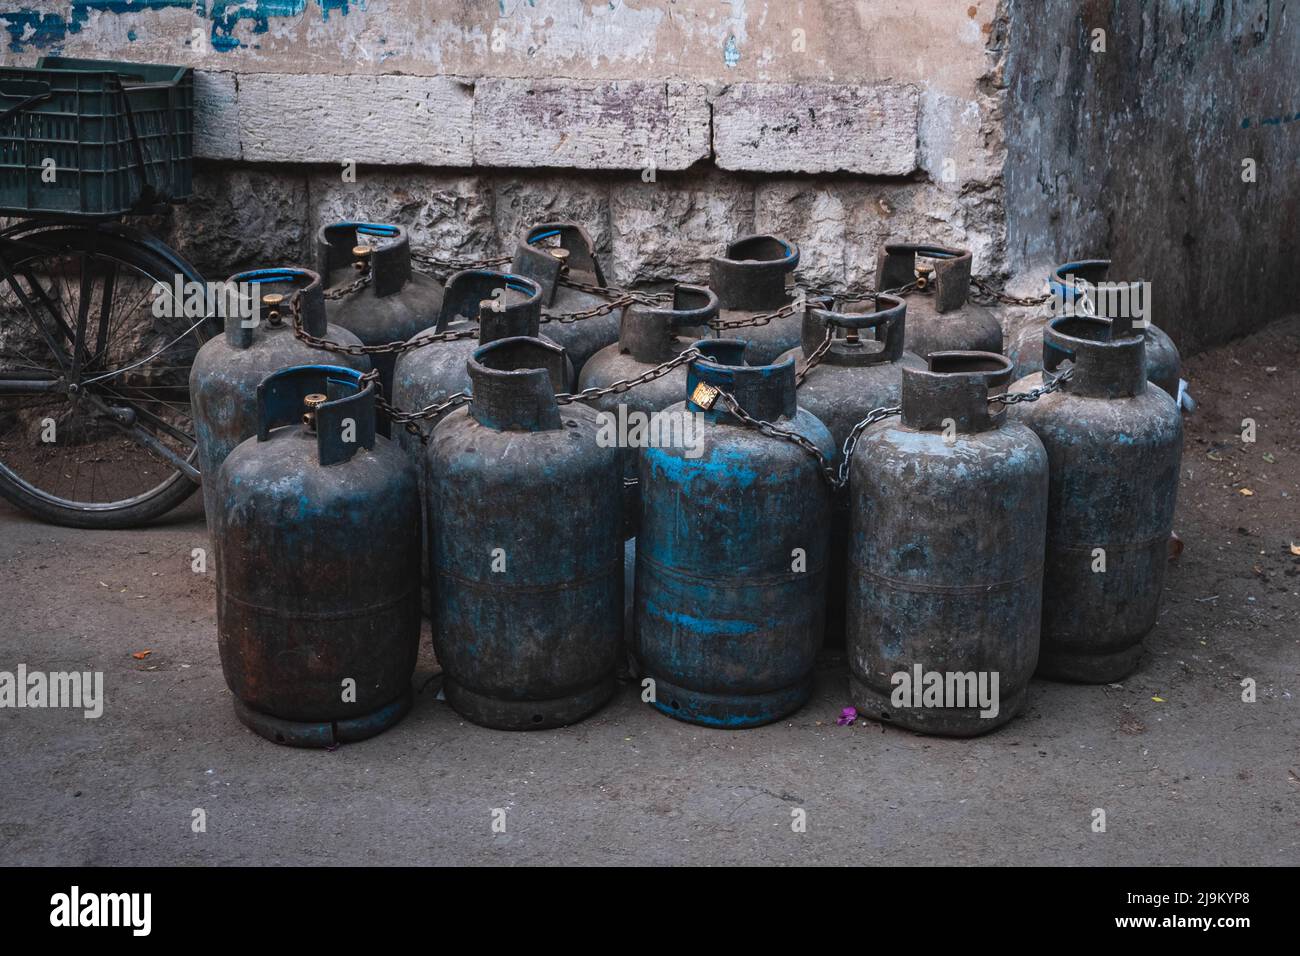 Many old, used propane gas bottles Stock Photo - Alamy